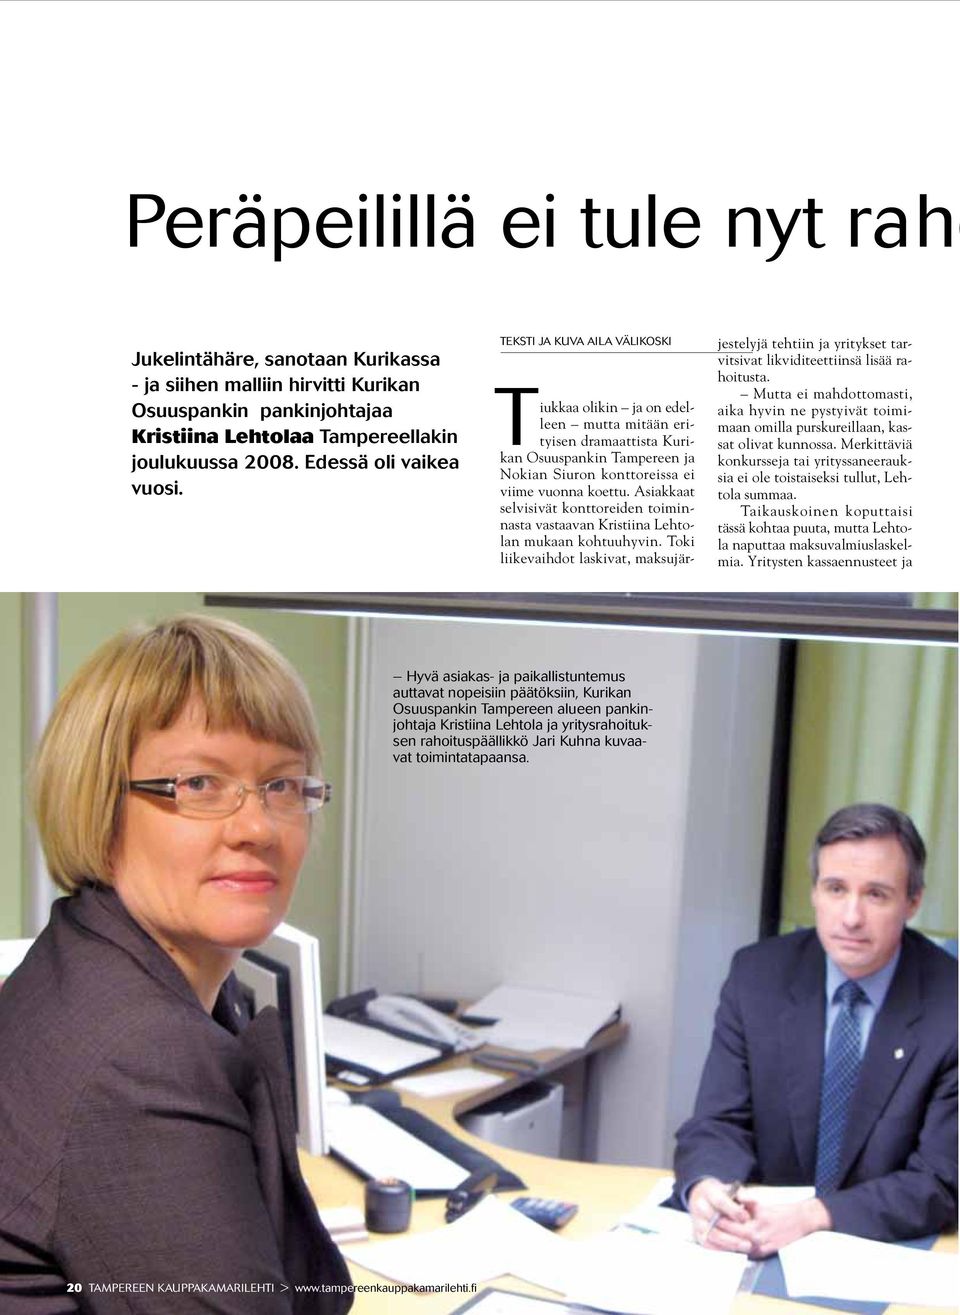 teksti ja kuva aila välikoski Tiukkaa olikin ja on edelleen mutta mitään erityisen dramaattista Kurikan Osuuspankin Tampereen ja Nokian Siuron konttoreissa ei viime vuonna koettu.